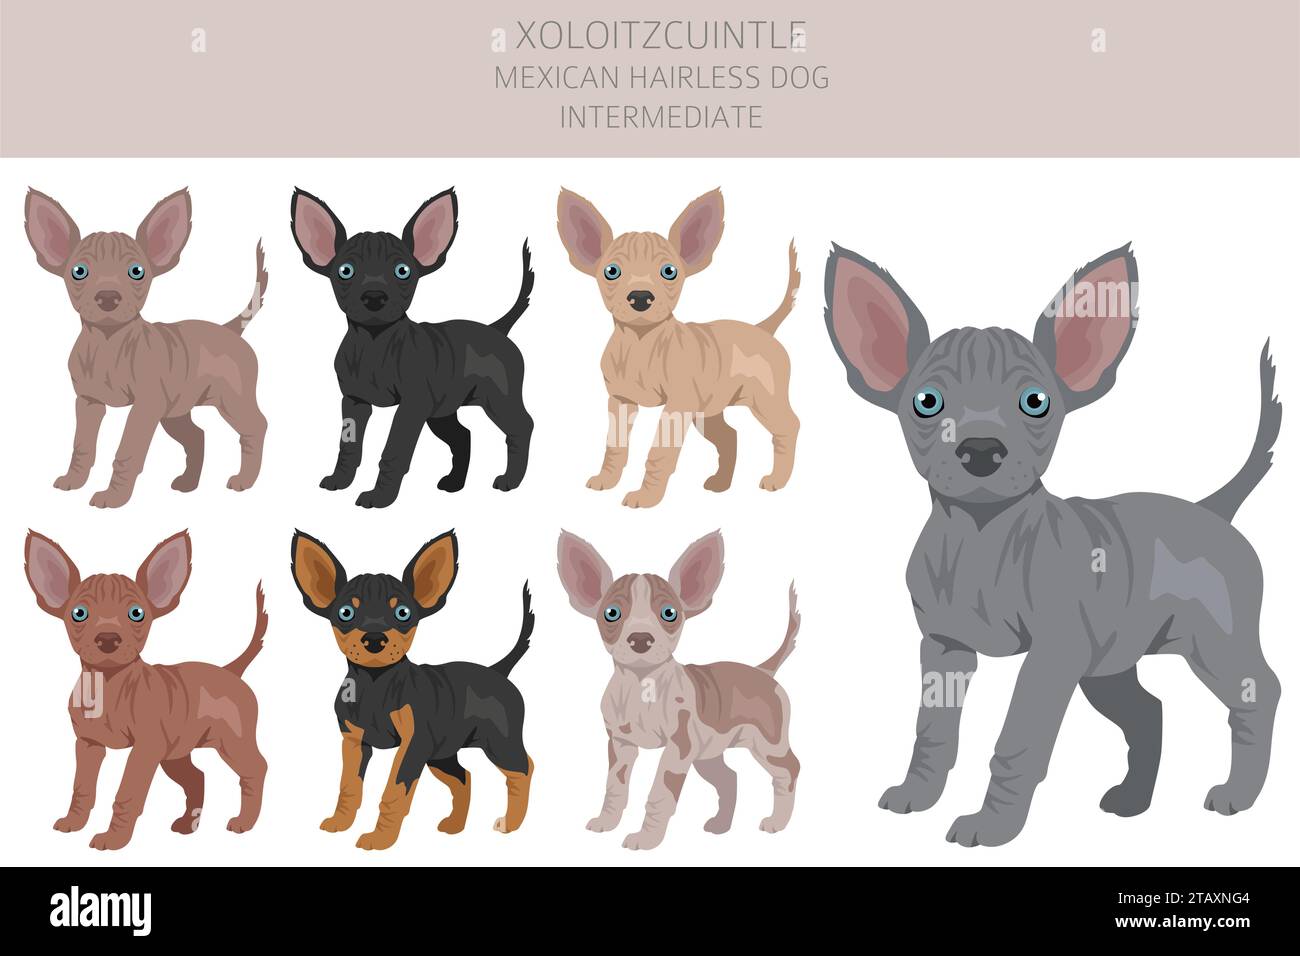 Xoloitzcuintle, chien mexicain sans poils clipart intermédiaire chiot. Différentes poses, couleurs de manteau définies. Illustration vectorielle Illustration de Vecteur